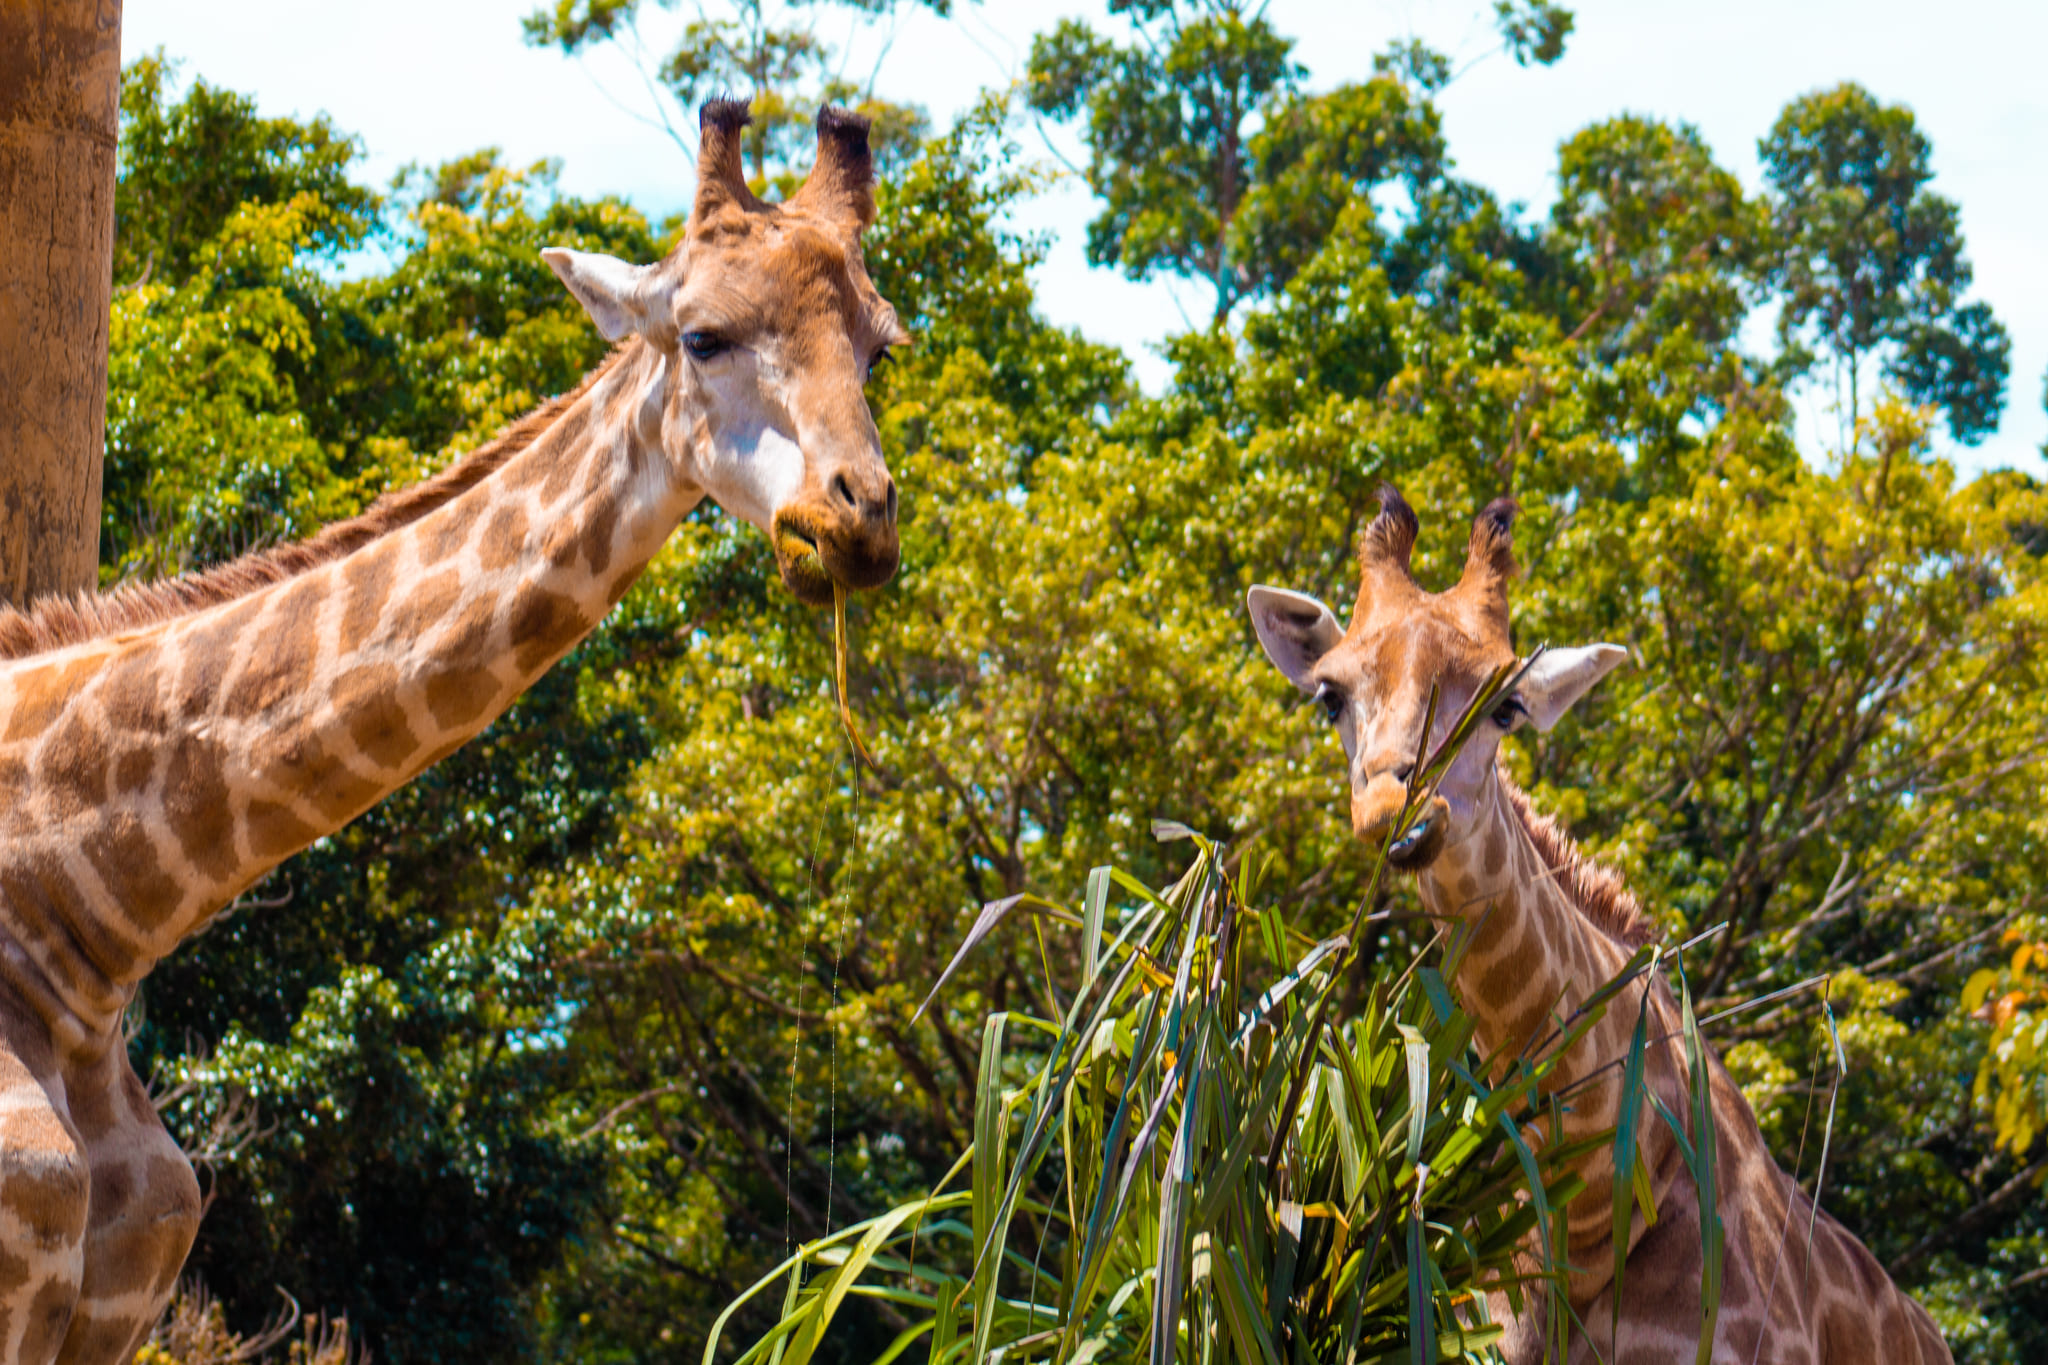 Beto Carrero World: atrações de acordo com faixa etária (0 a 3 anos) | Observação de girafas | Conexão123